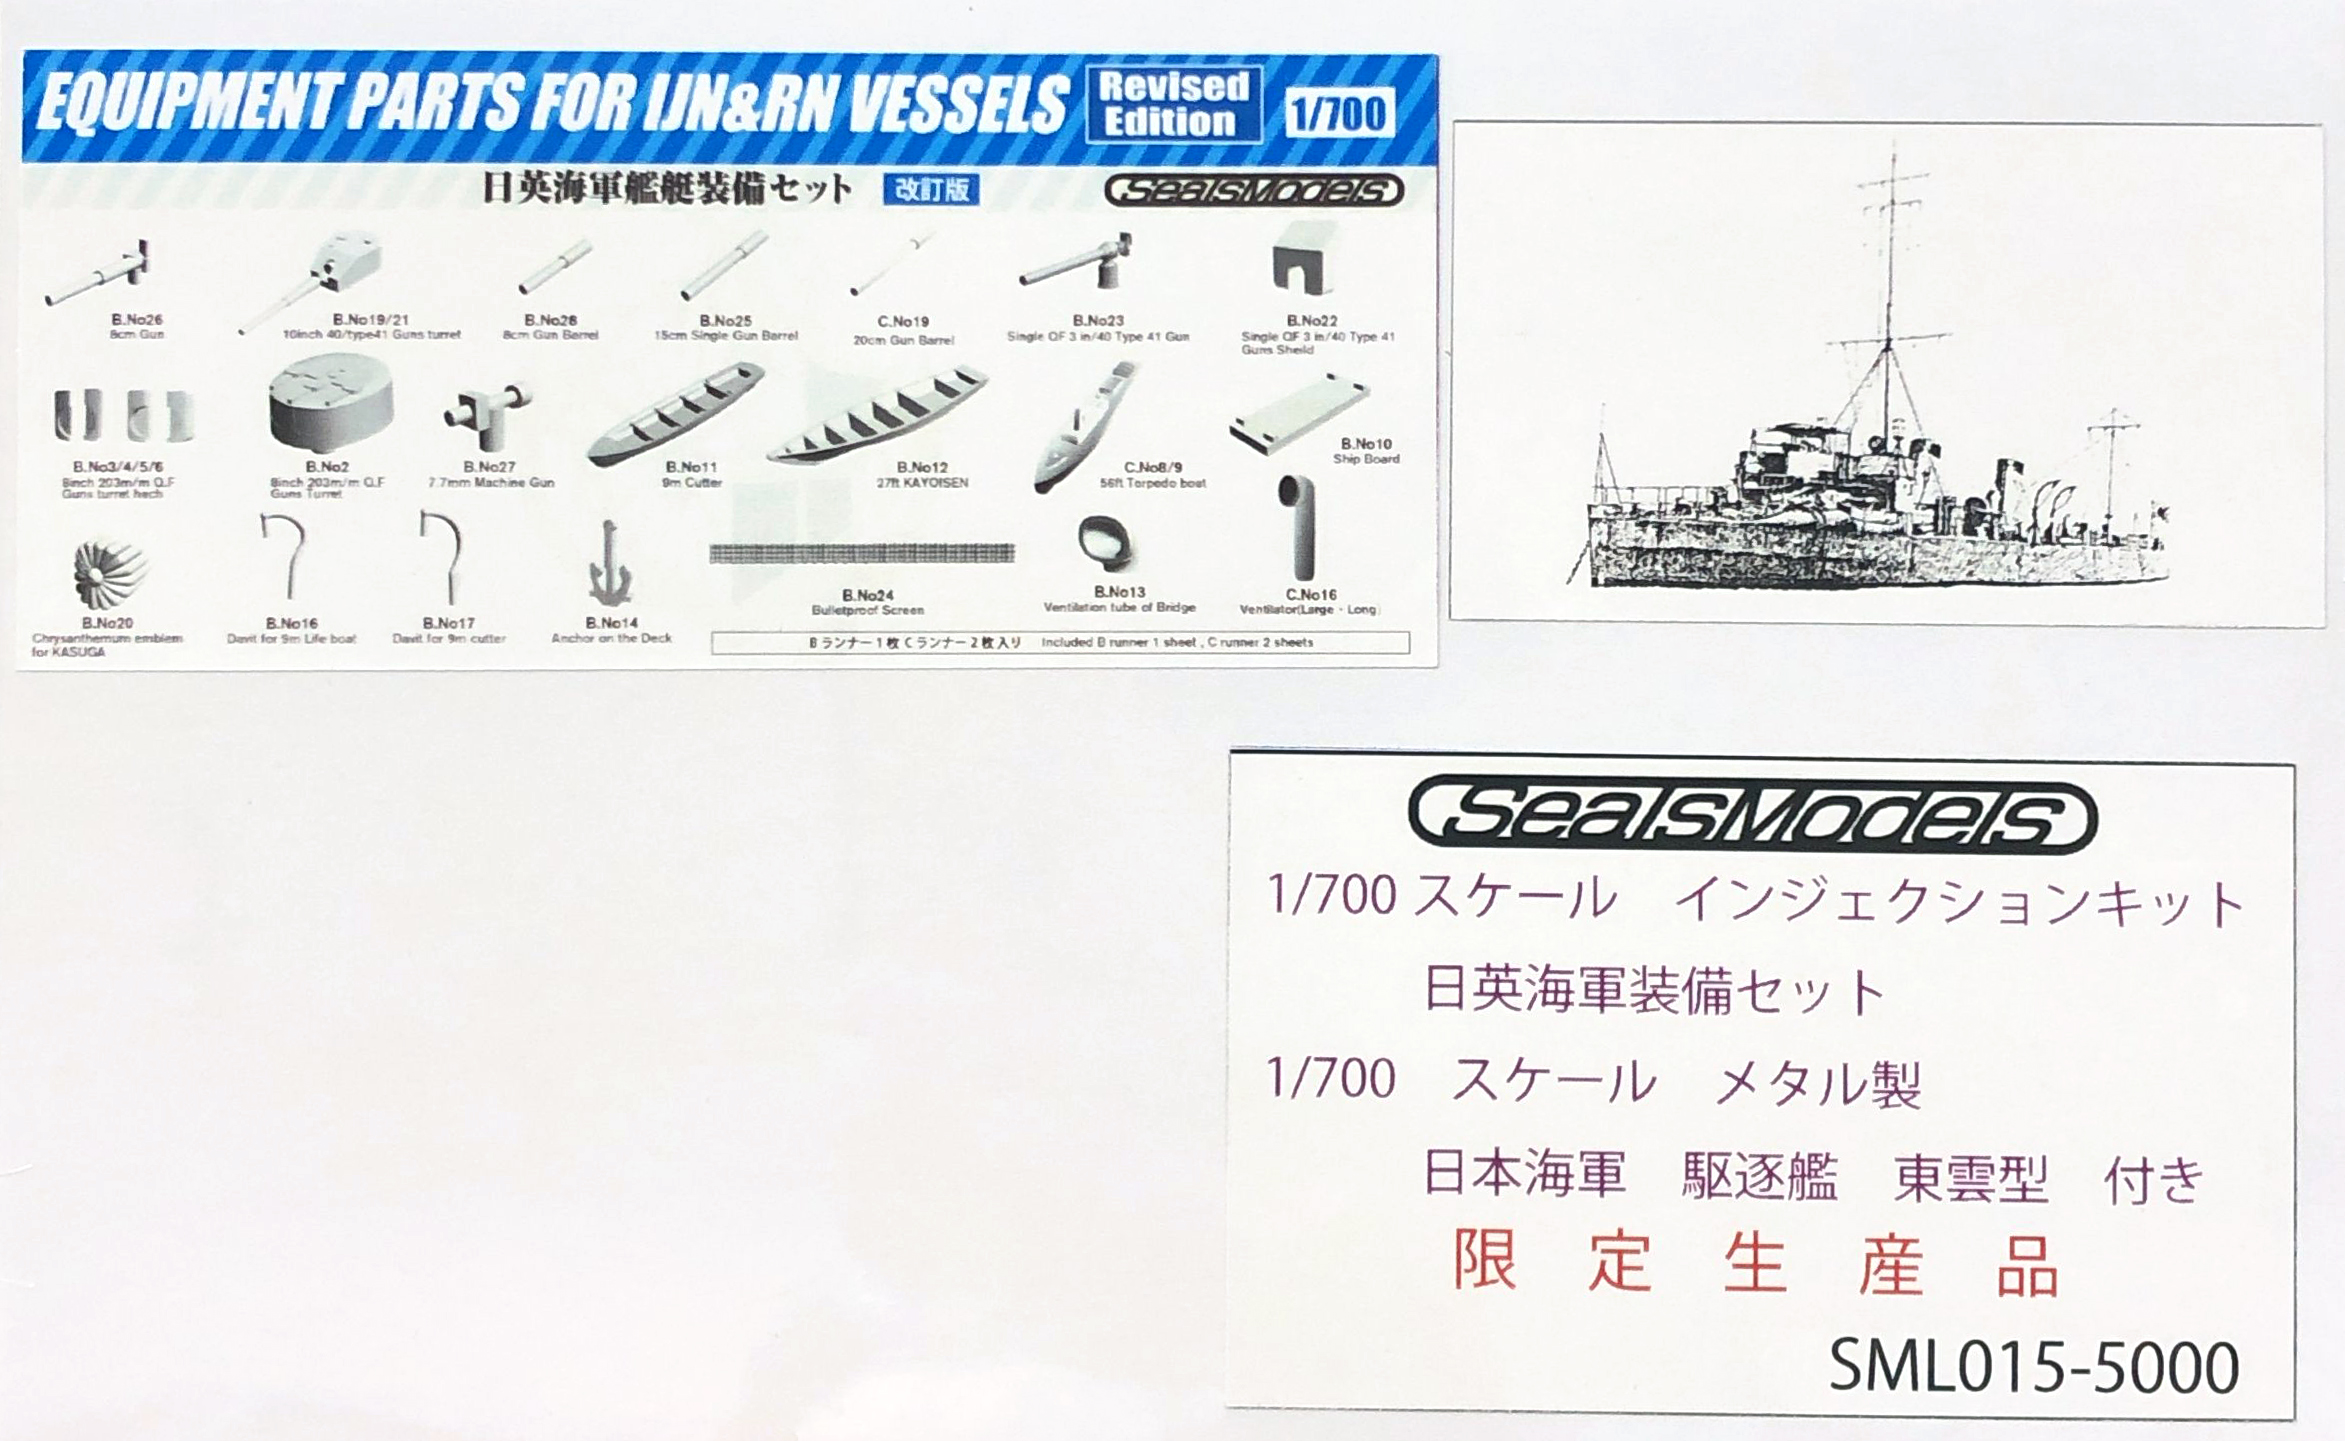 シールズモデル限定品「日英海軍装備セット 日本海軍駆逐艦 東雲型付き」入荷しました。